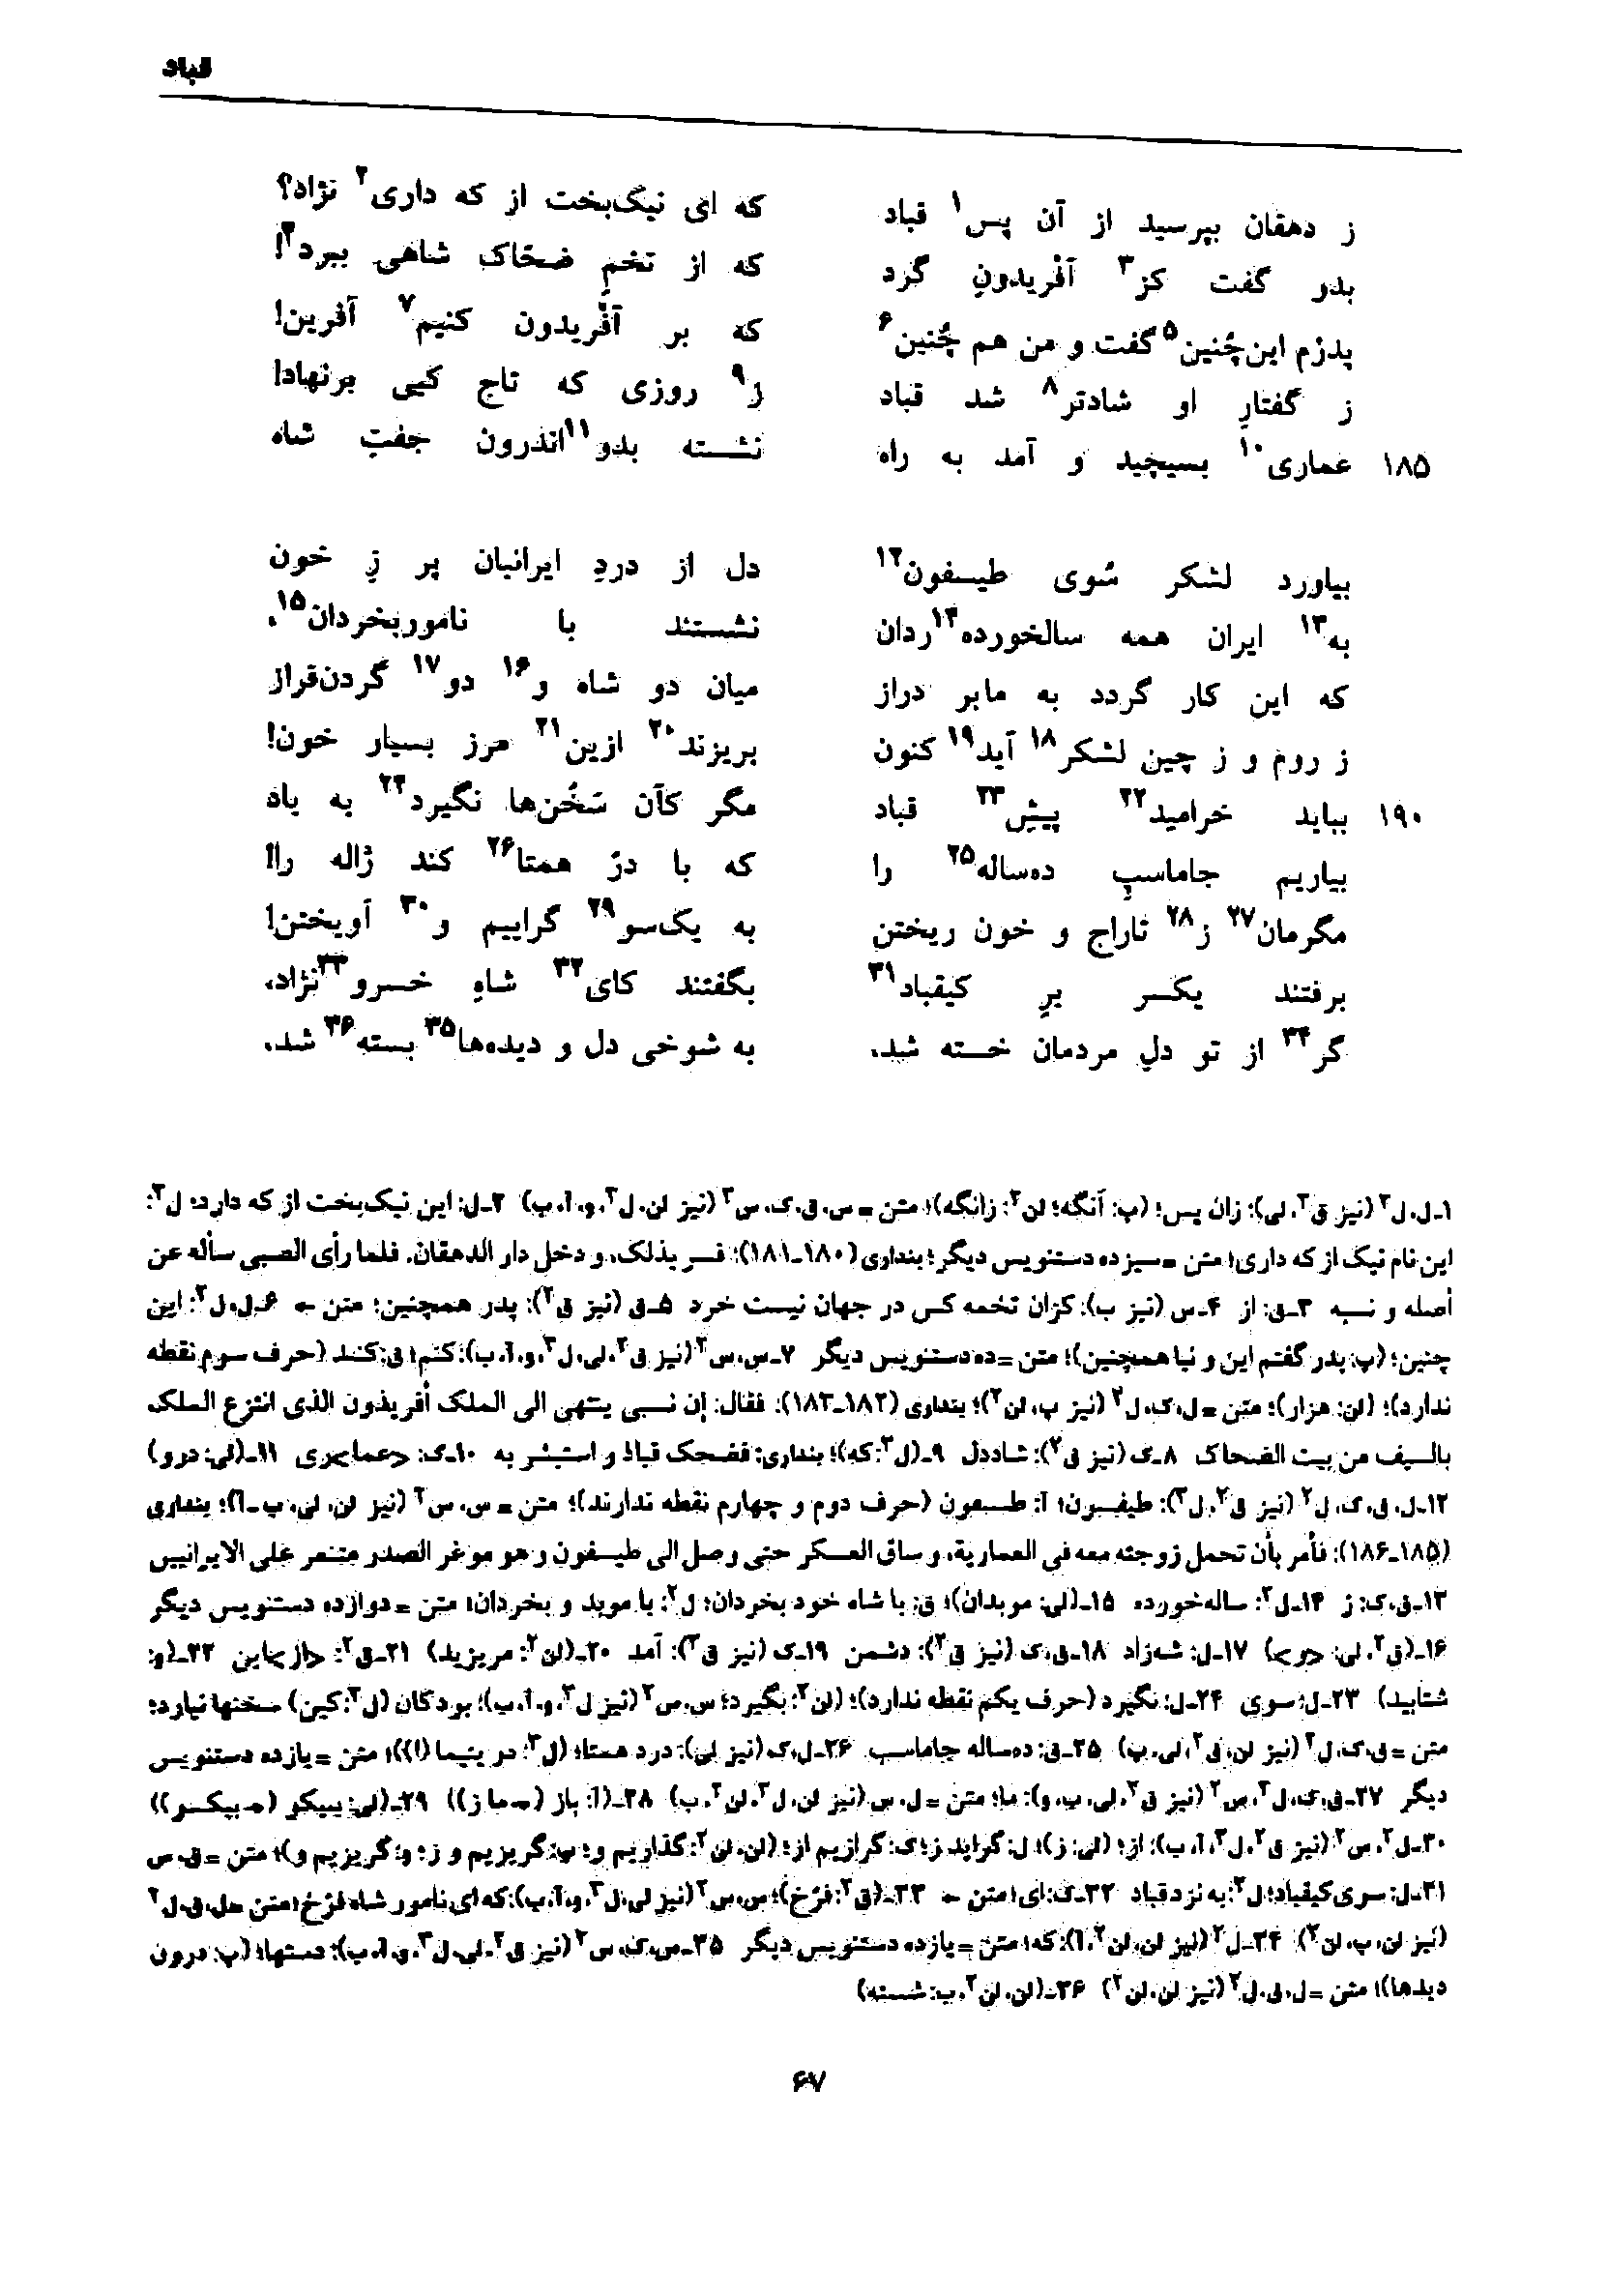 vol. 7, p. 67